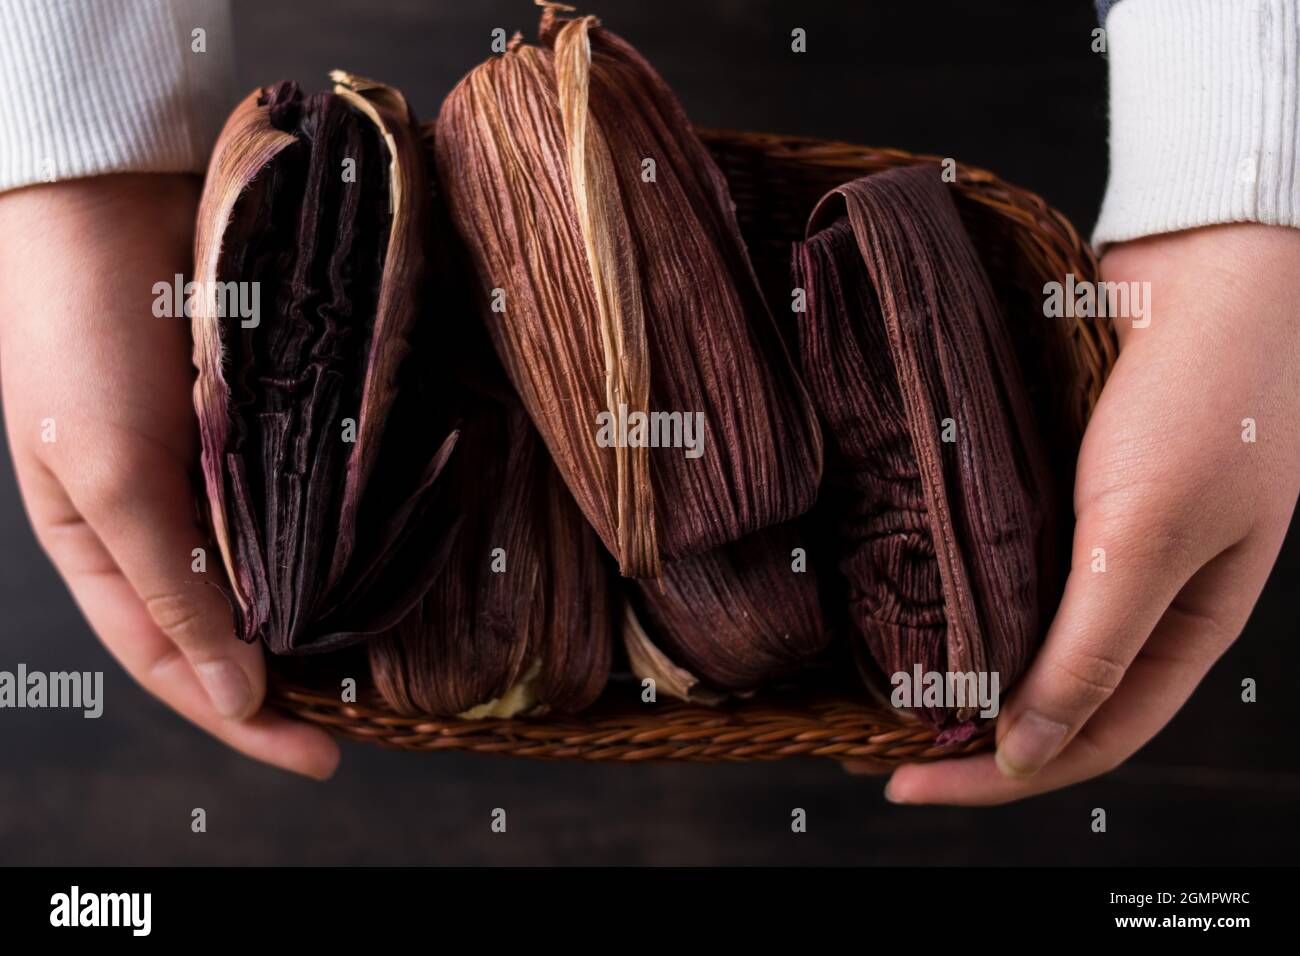 Persona que sostiene muchos alimentos tradicionales latinos hechos de maíz y envueltos en hojas de maíz púrpura en una cesta sobre una mesa de madera negra Foto de stock